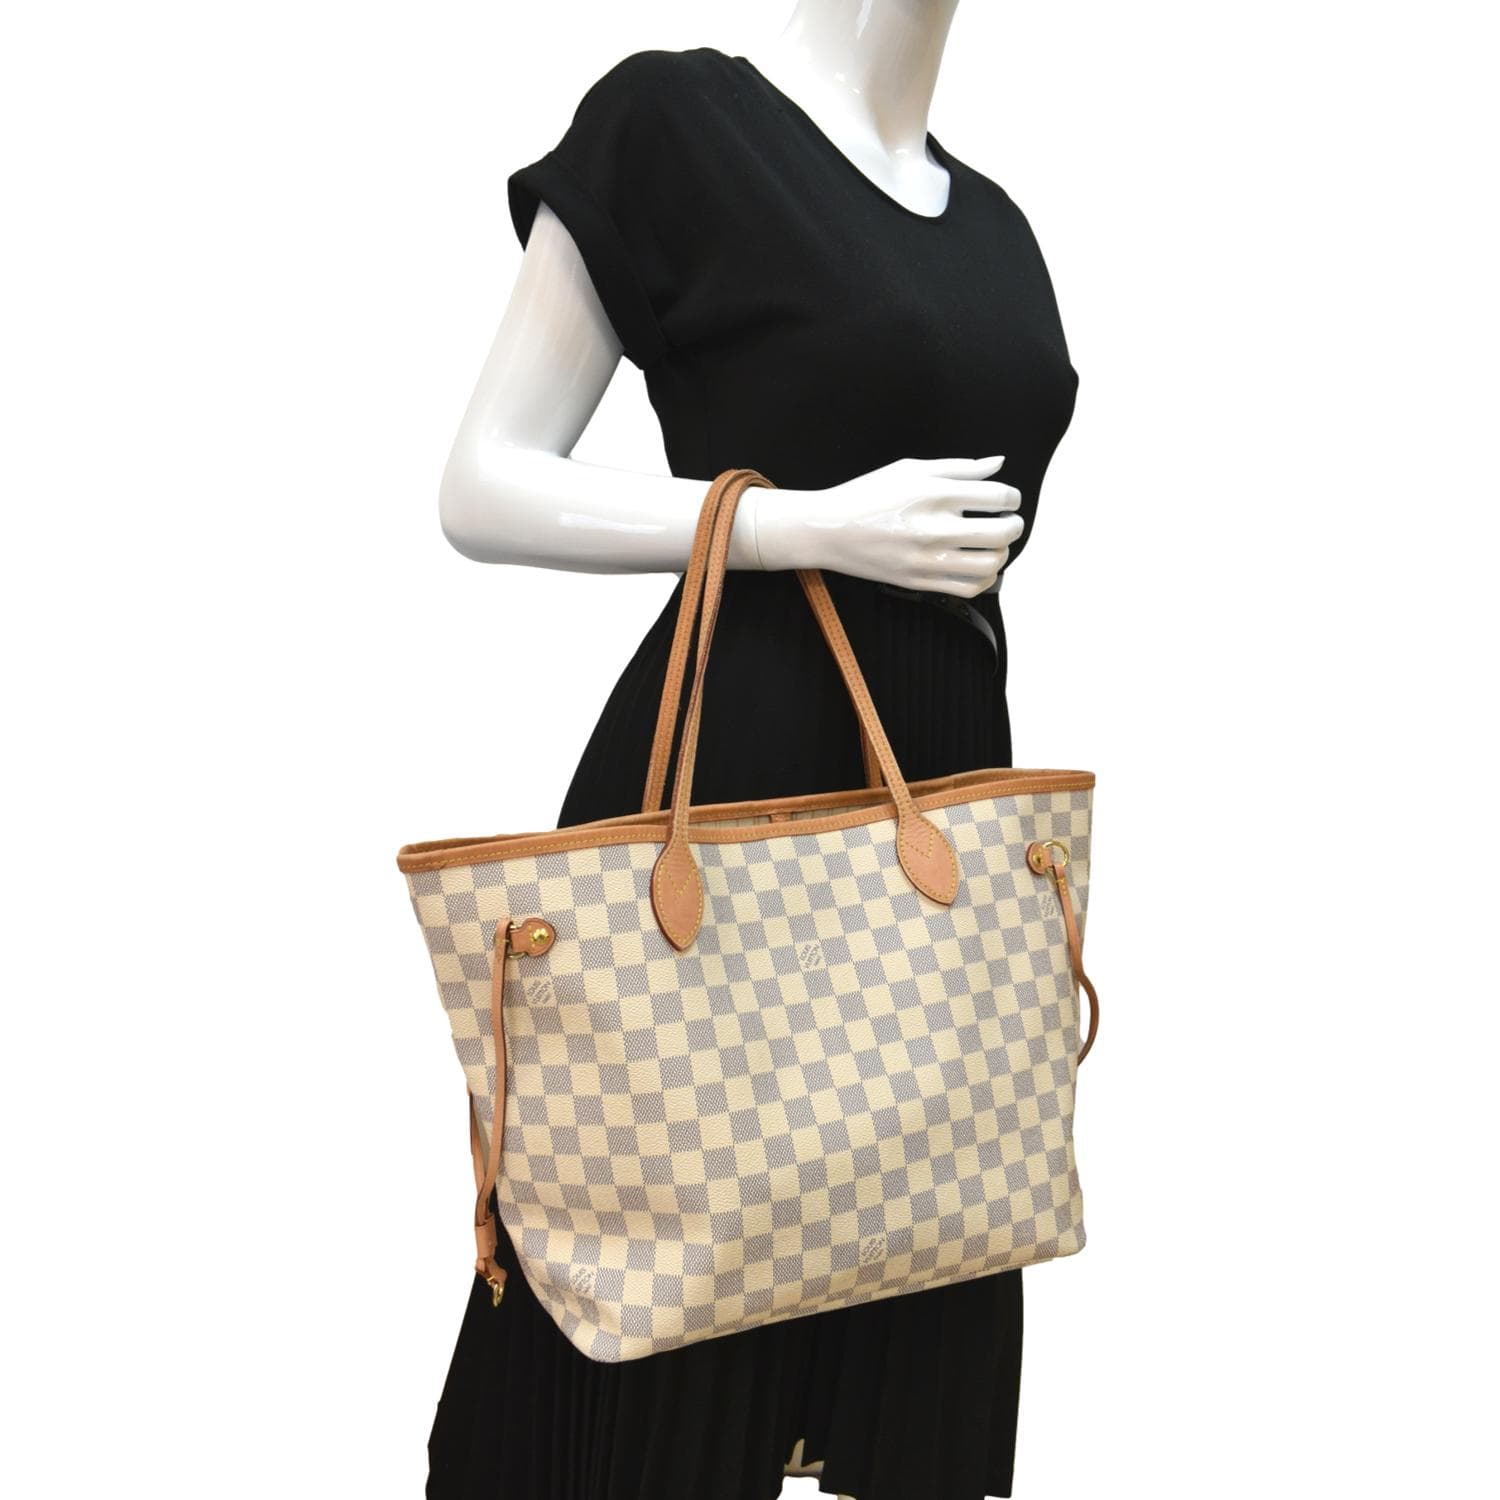 Neverfull MM Damier Azur - Women - Handbags